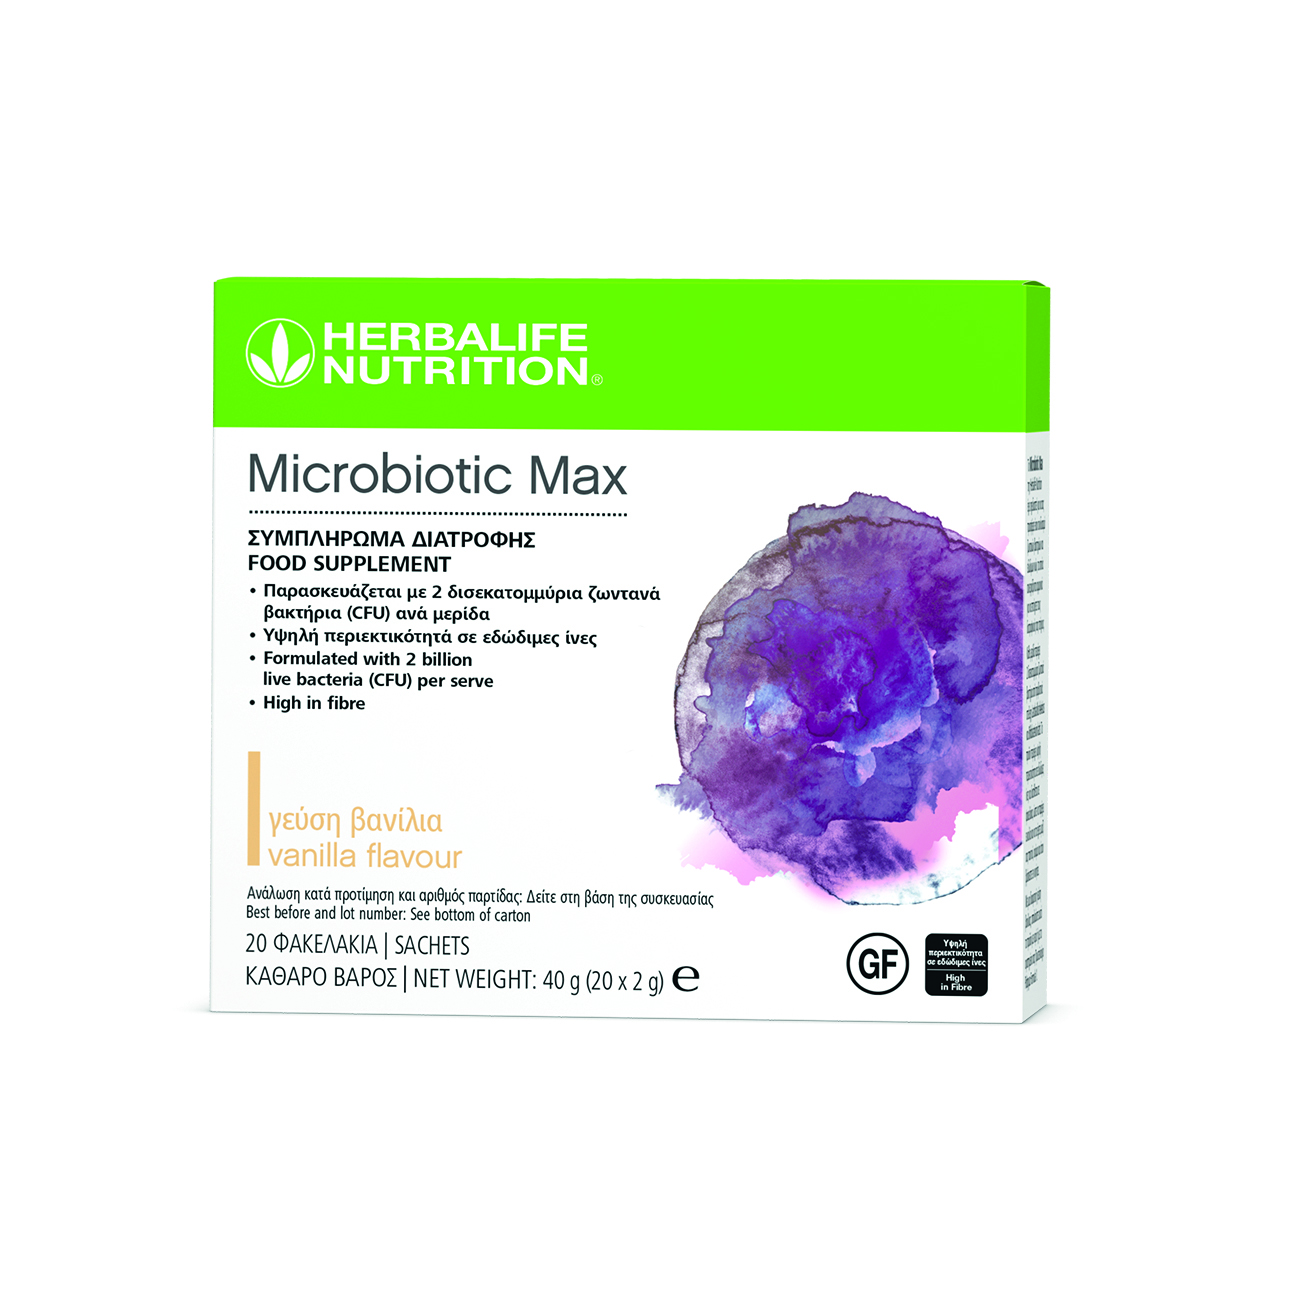 Το  Microbiotic Max είναι ένα συμπλήρωμα διατροφής σε μορφή σκόνης, το οποίο έχει σχεδιαστεί για να προσφέρει έναν συνδυασμό από προβιοτικά και πρεβιοτικές ίνες.